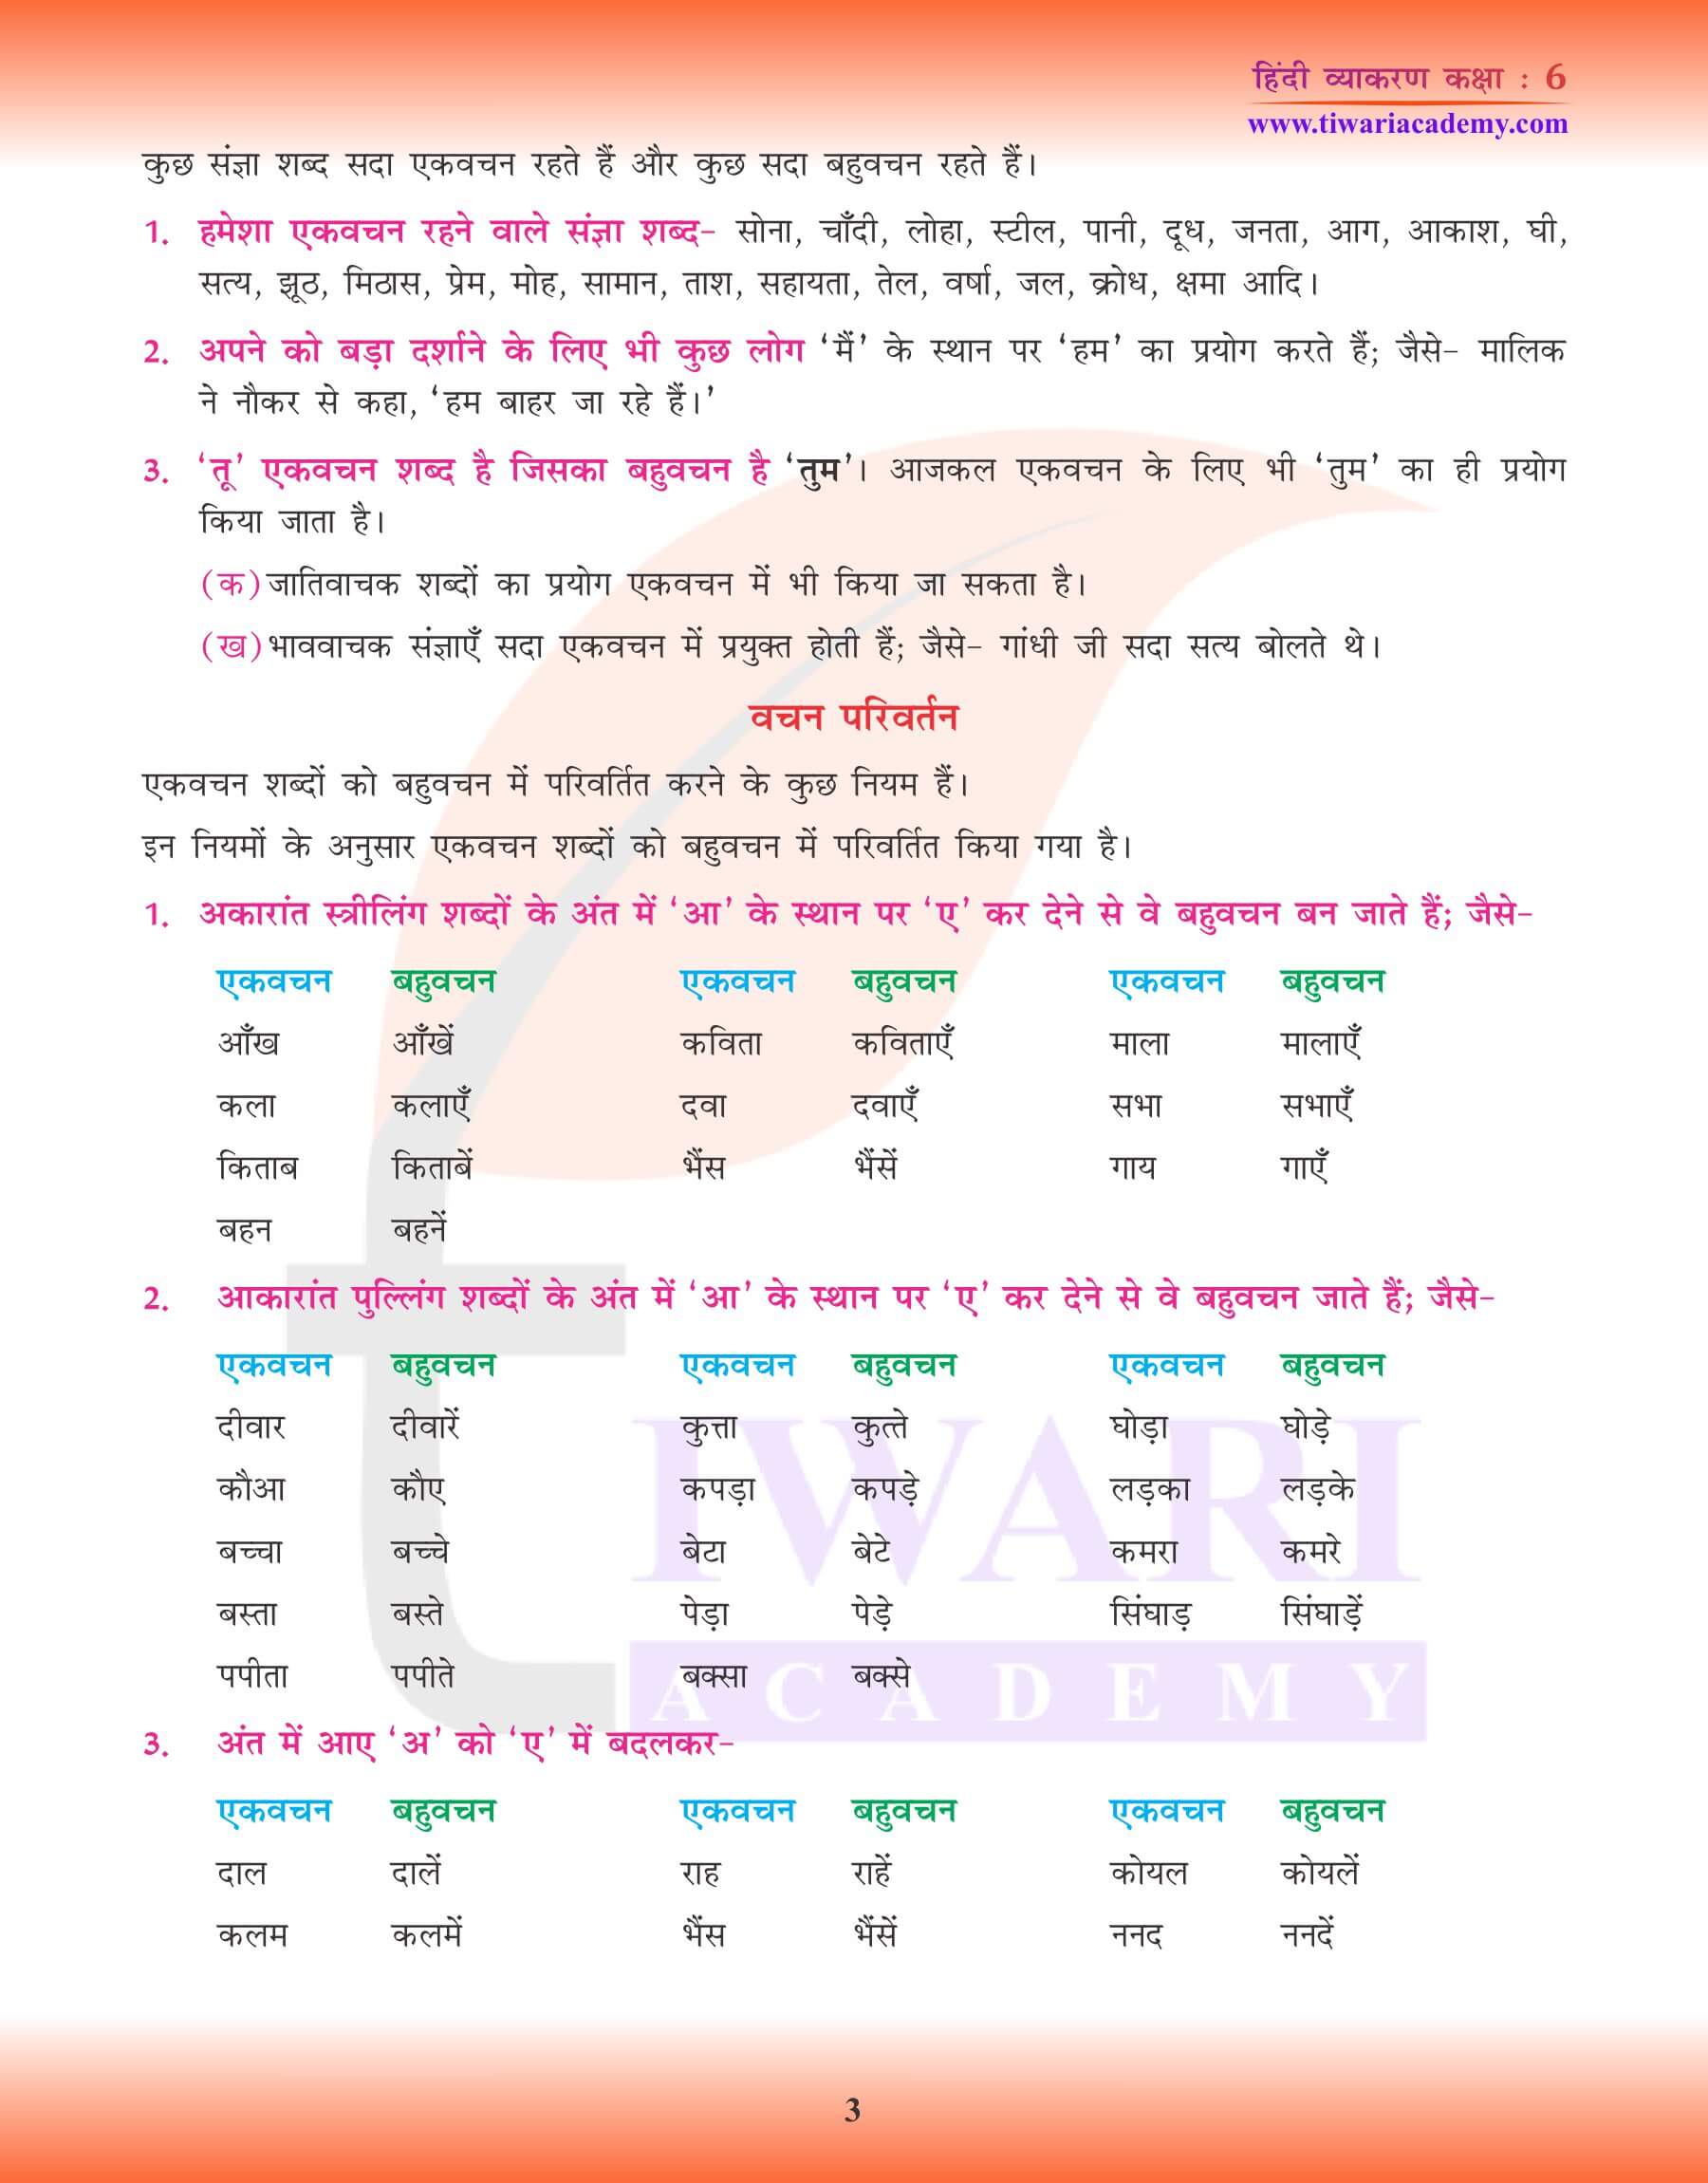 कक्षा 6 हिंदी व्याकरण अभ्यास पुस्तिका